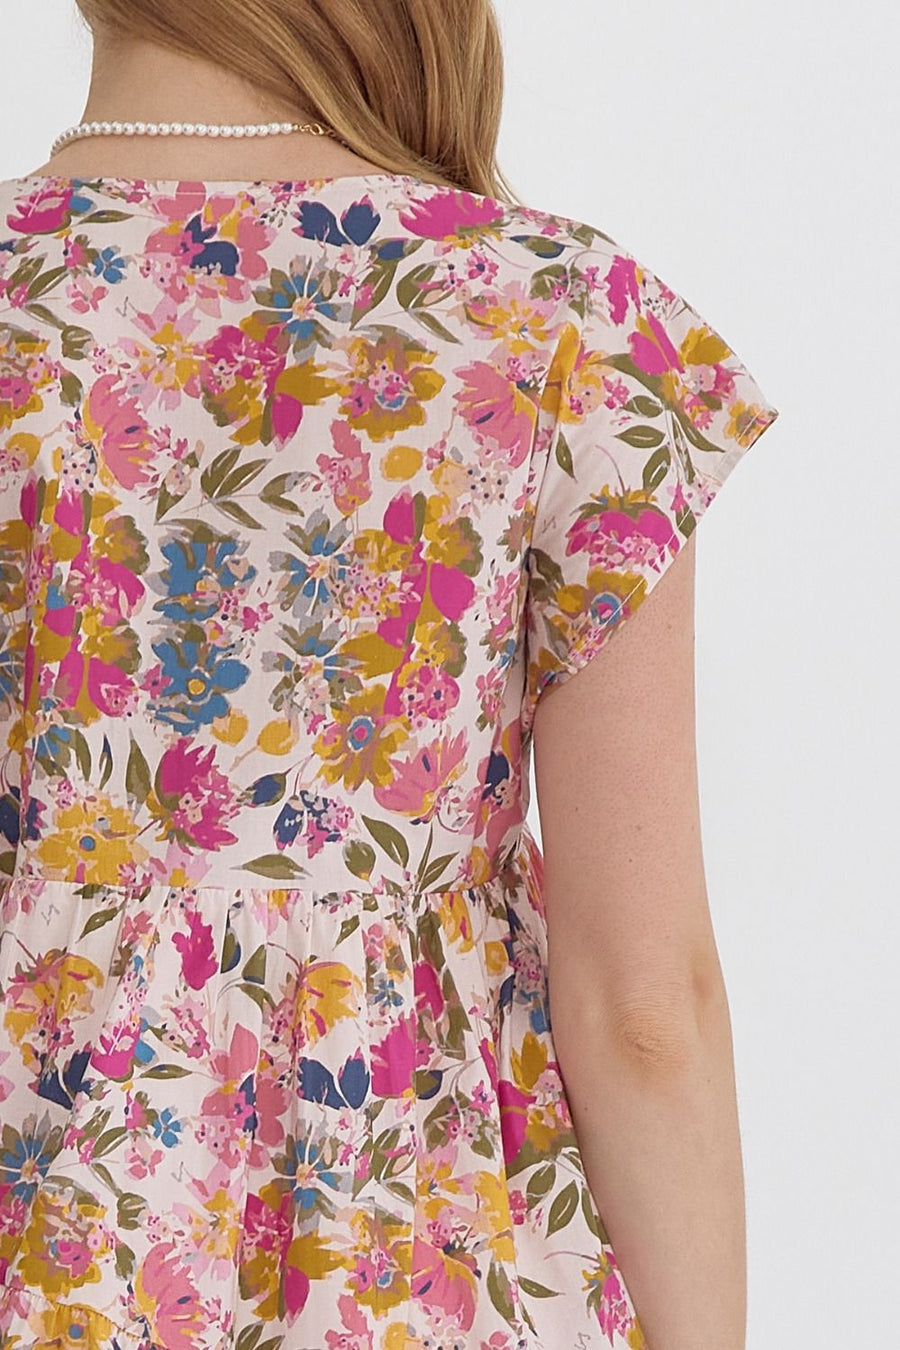 Caroline Floral Print Short Sleeve V-Neck Tiered Mini Dress